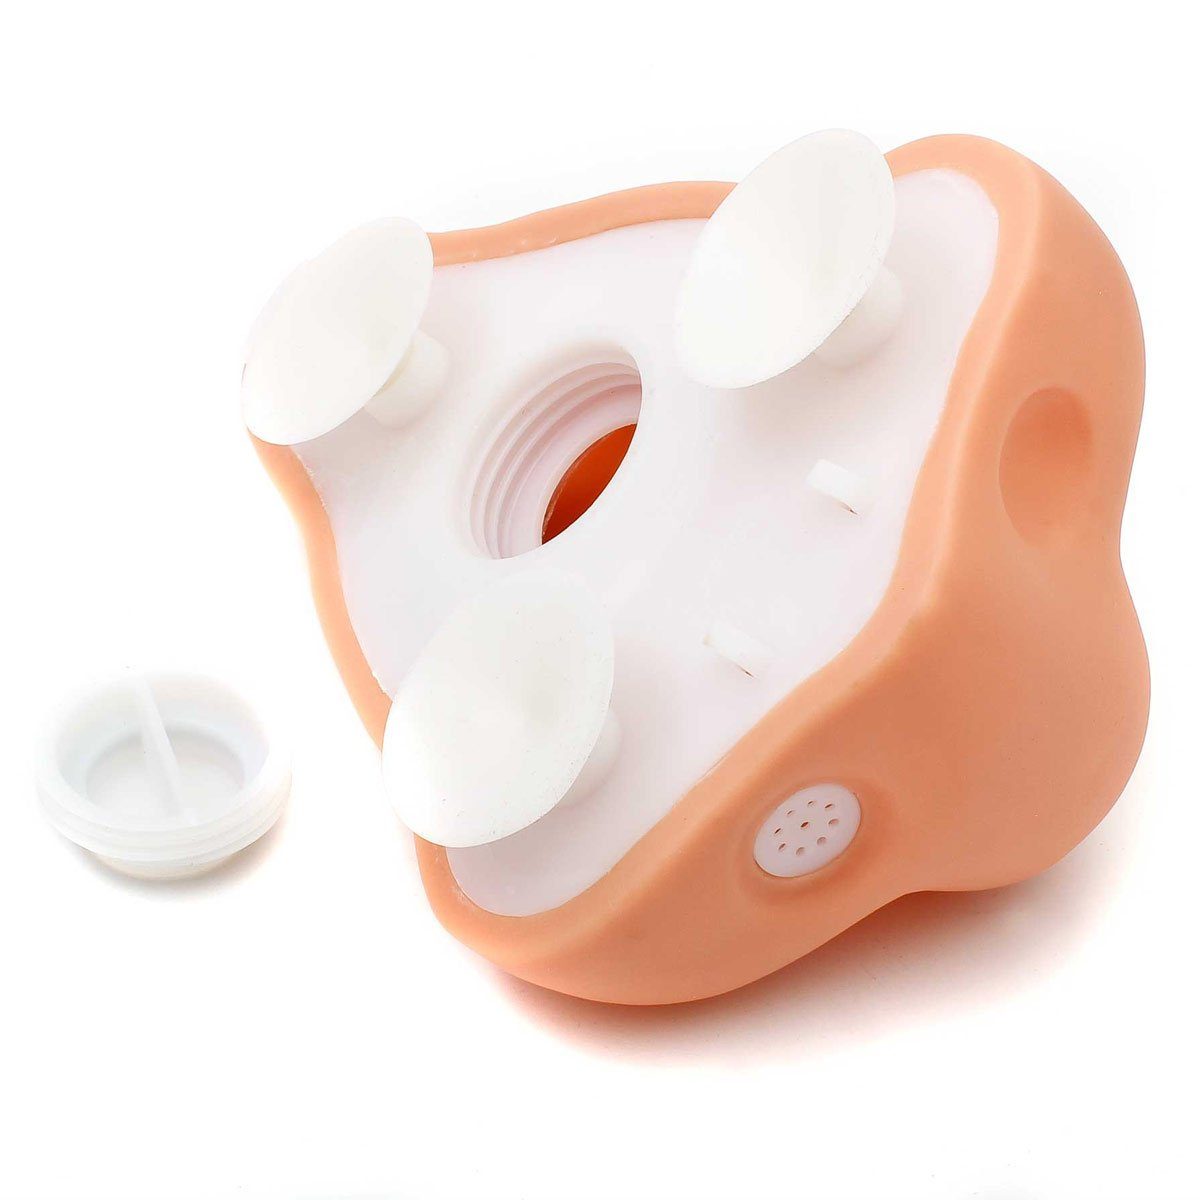 XXL Nasen Duschgelspender Nase Seifenspender Dispenser für Seife oder Duschgel 